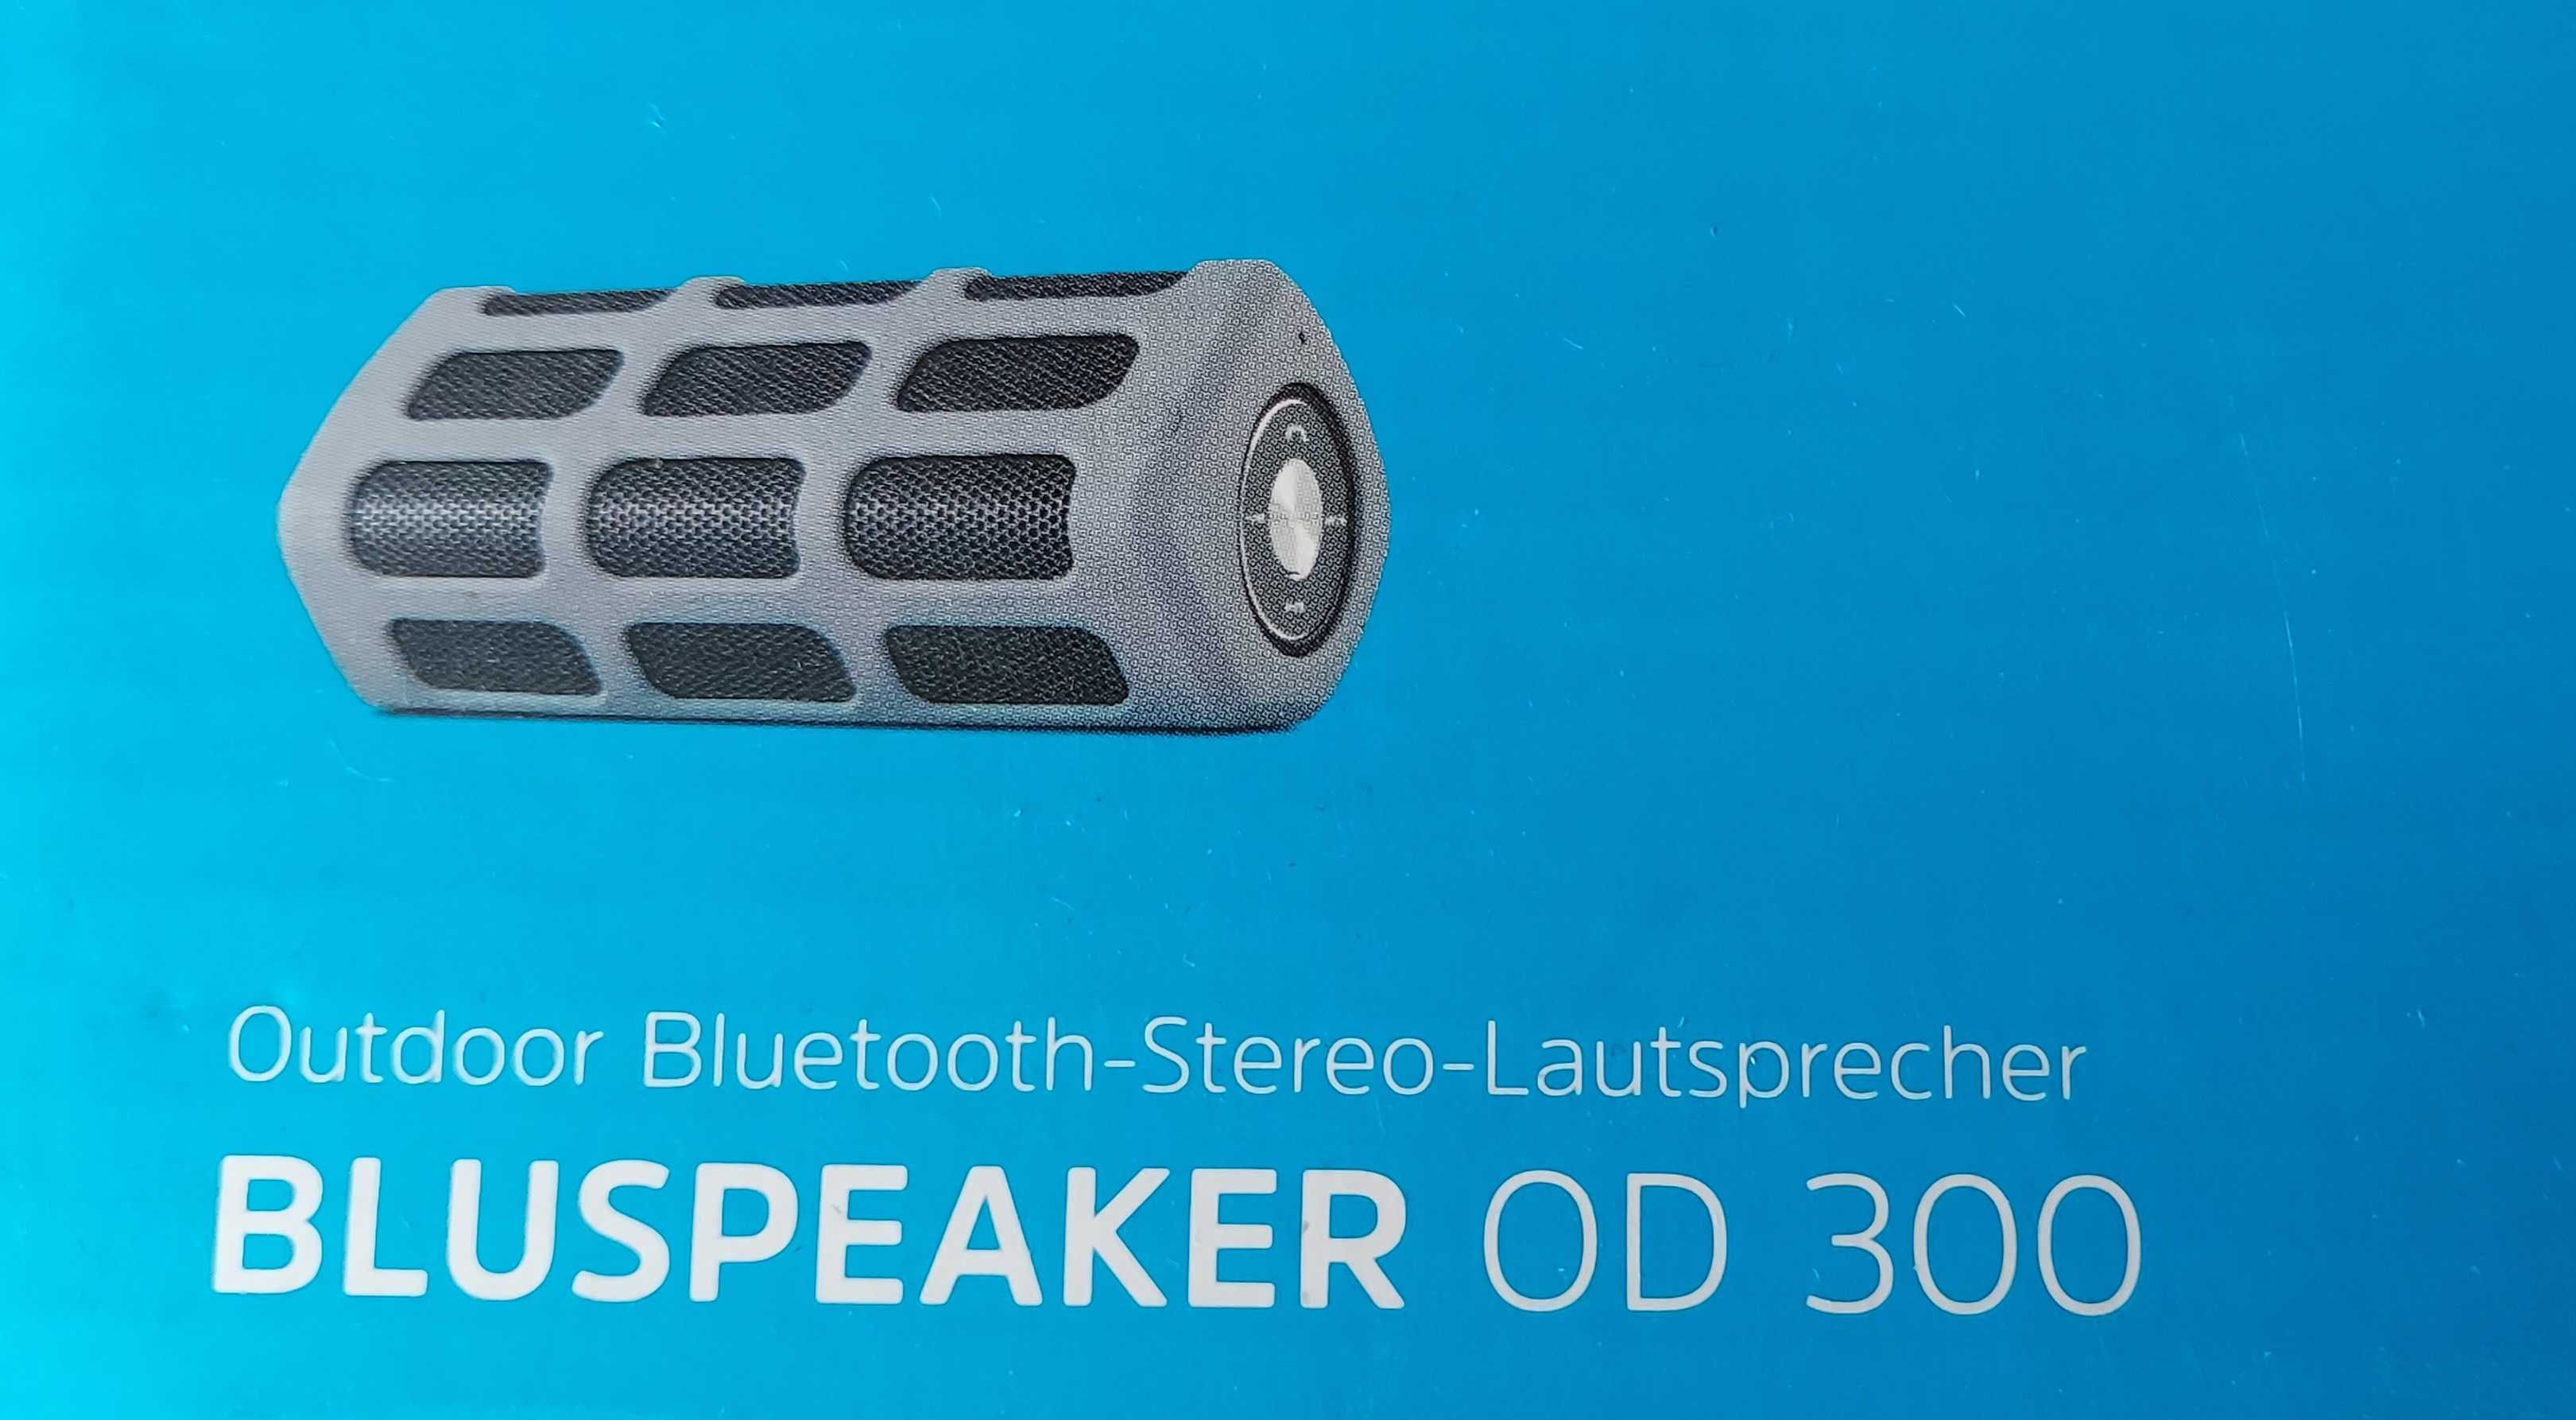 Głośnik bezprzewodowy Bluspeaker OD 300